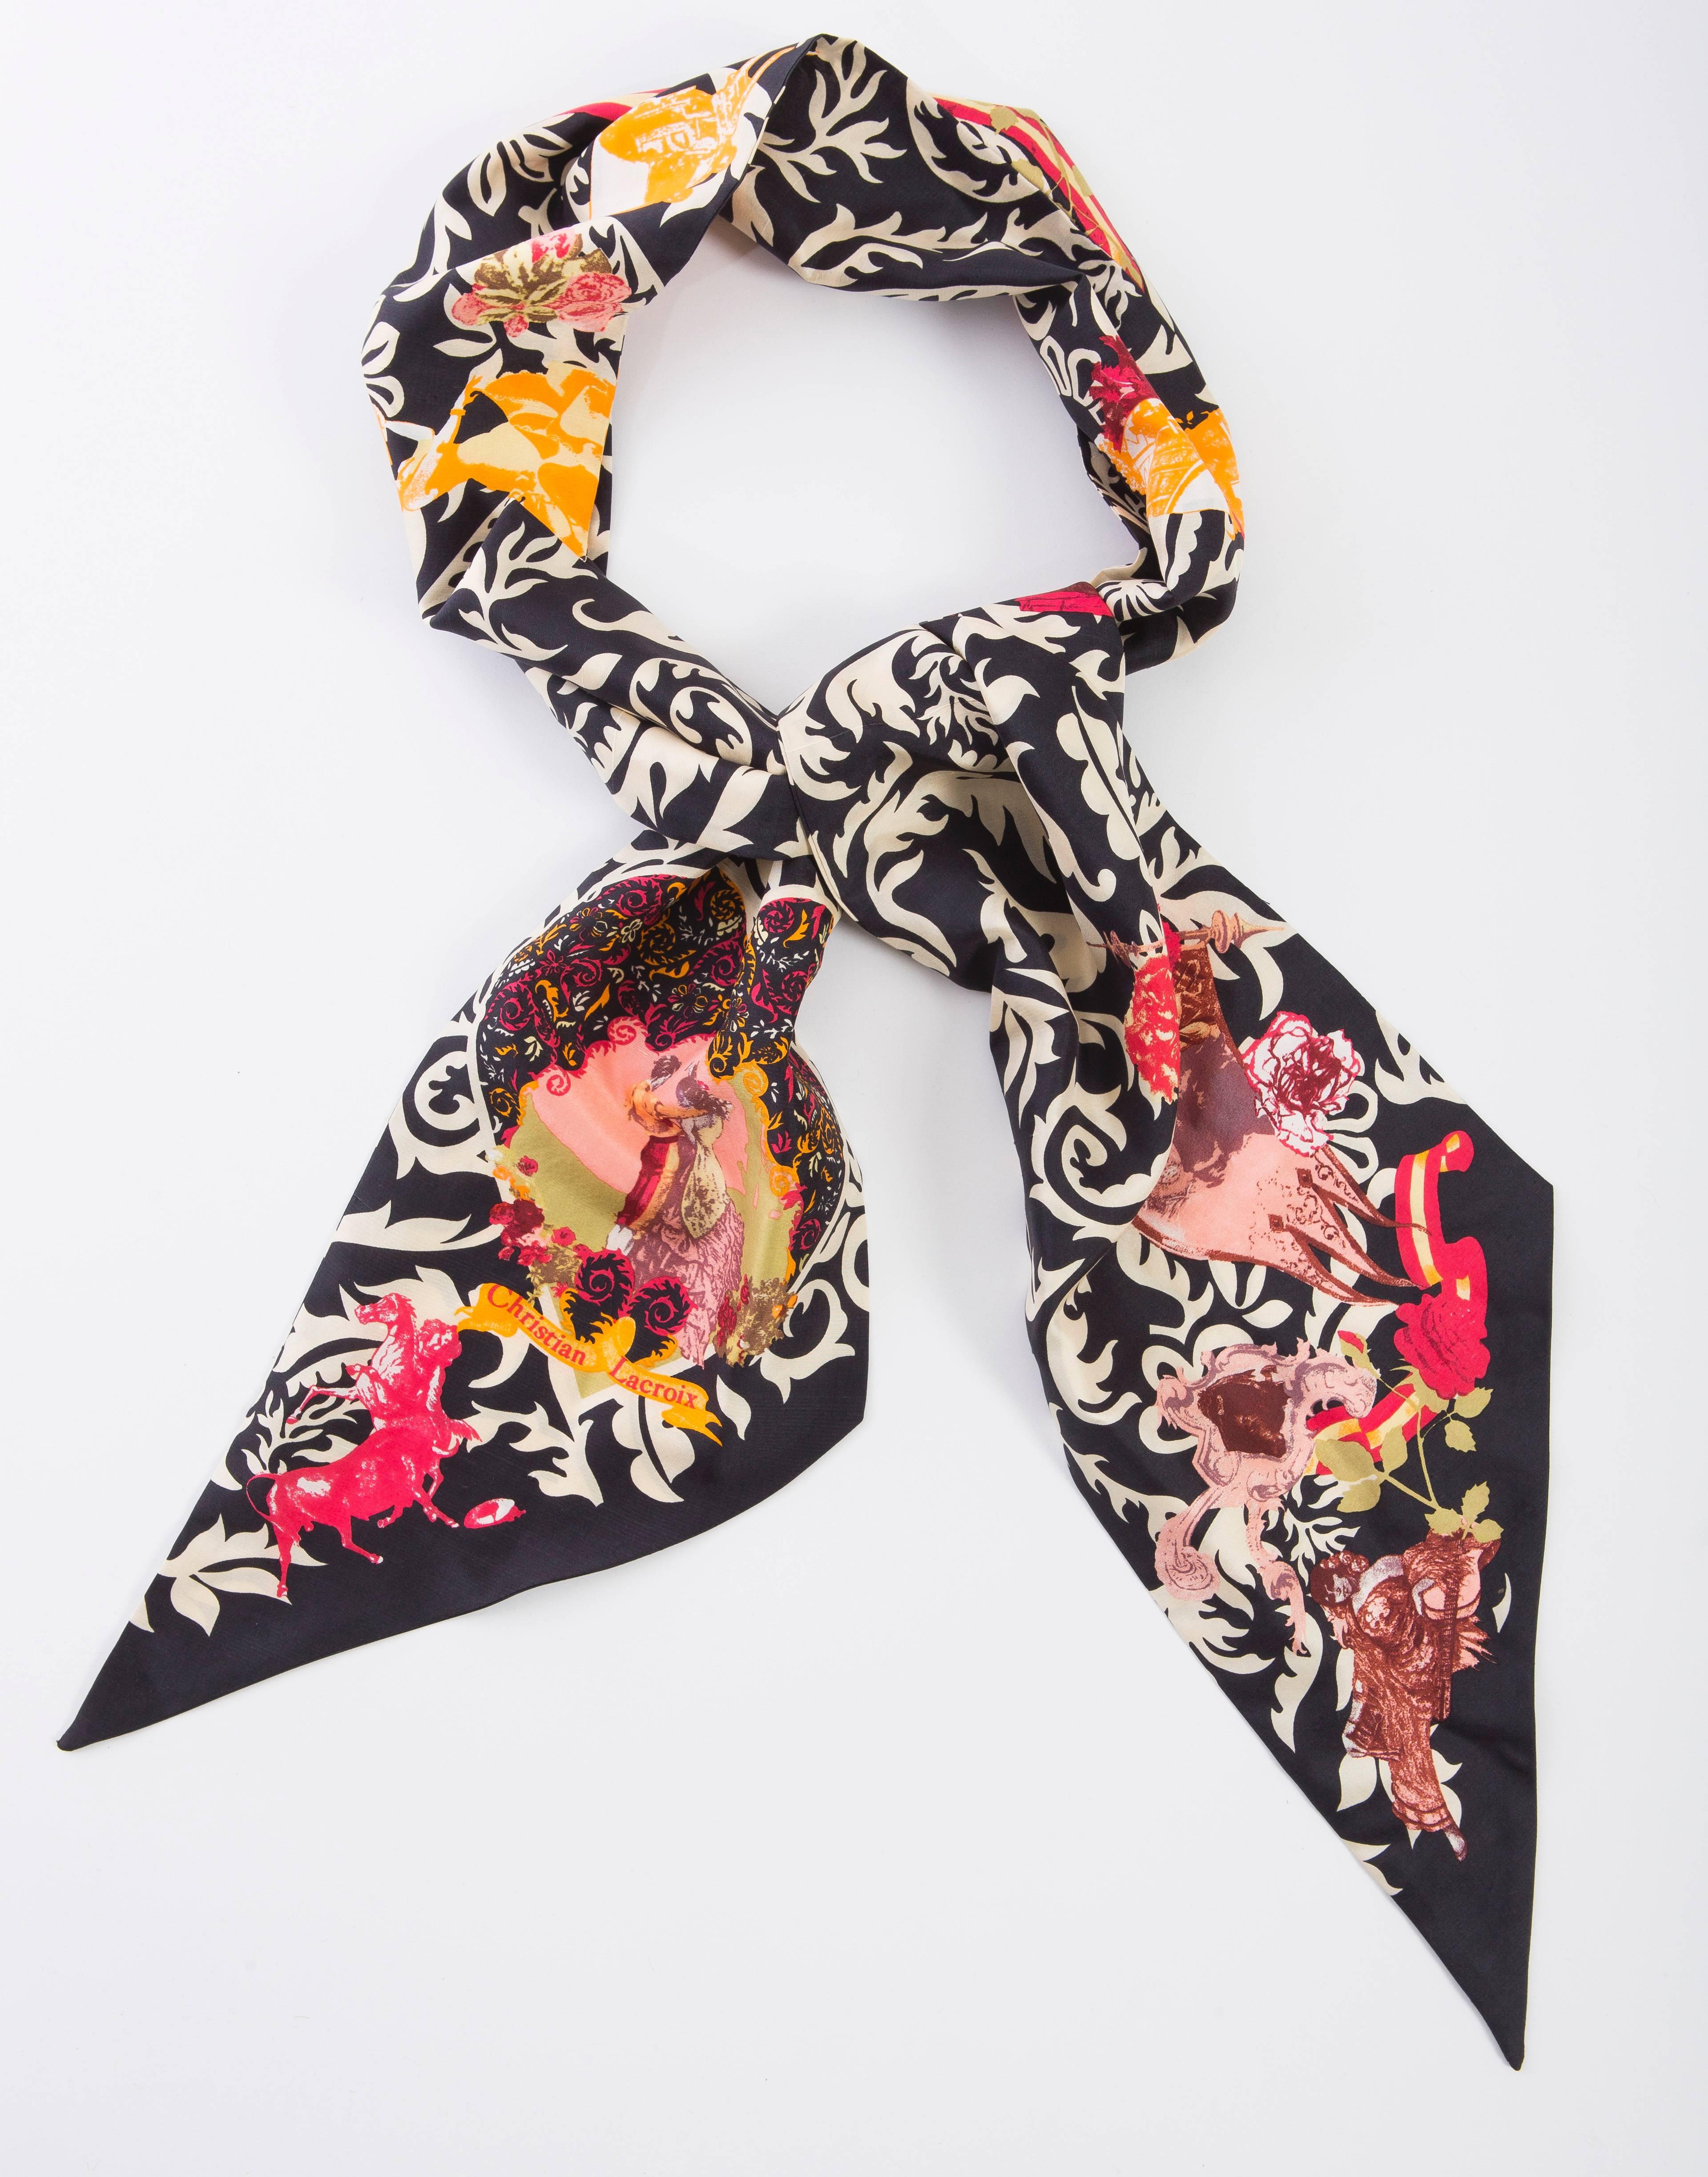 Christian Lacroix silk scarf gypsy theme.